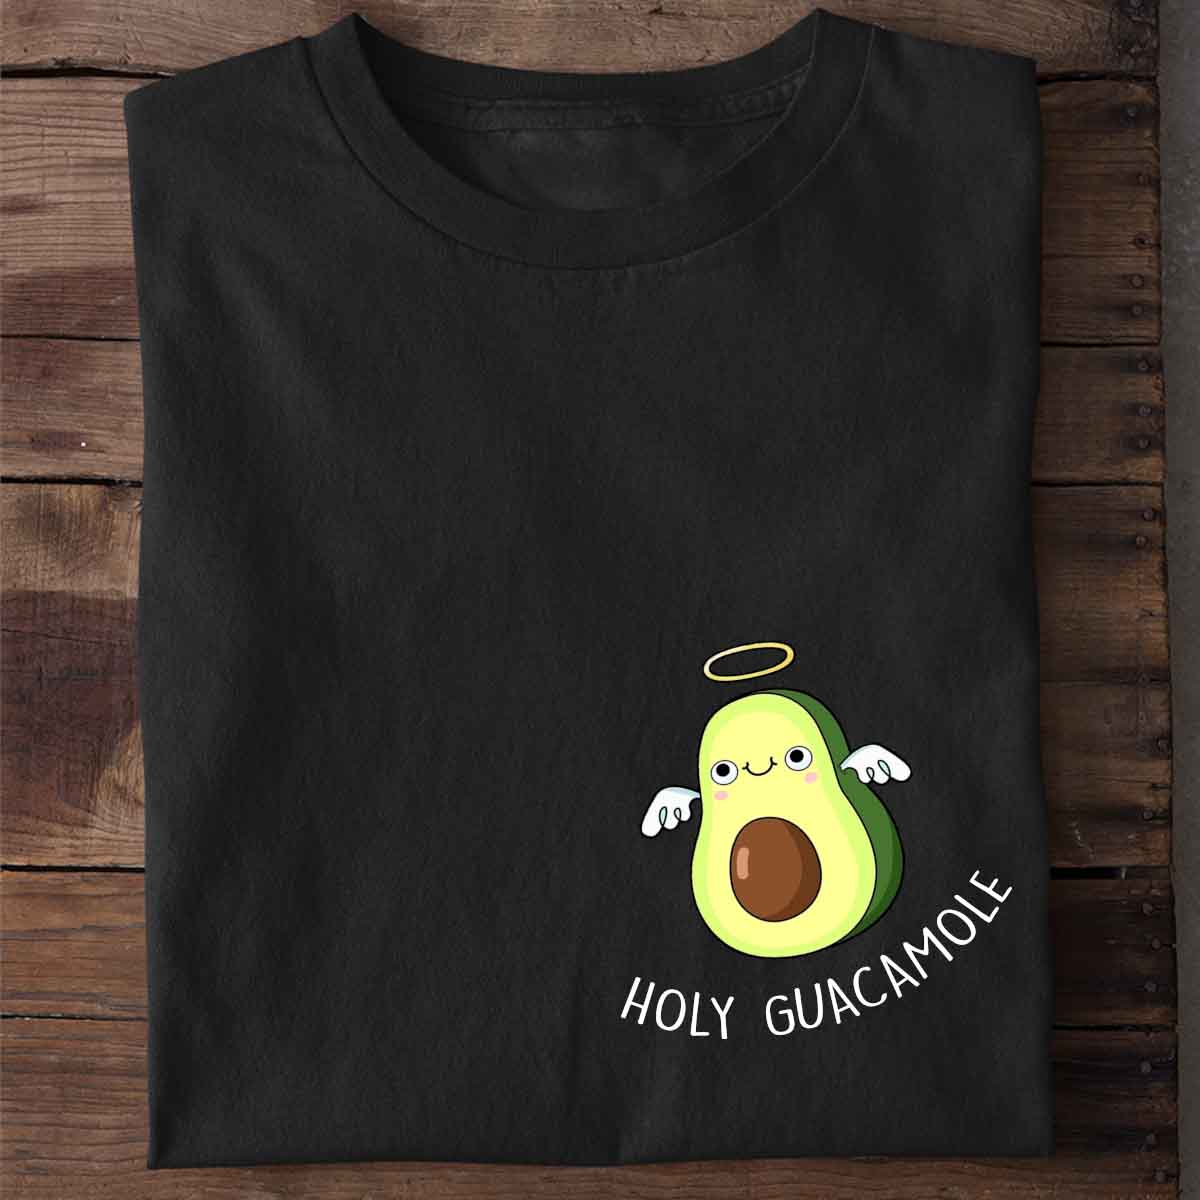 Holy Guacamole - Shirt Unisex